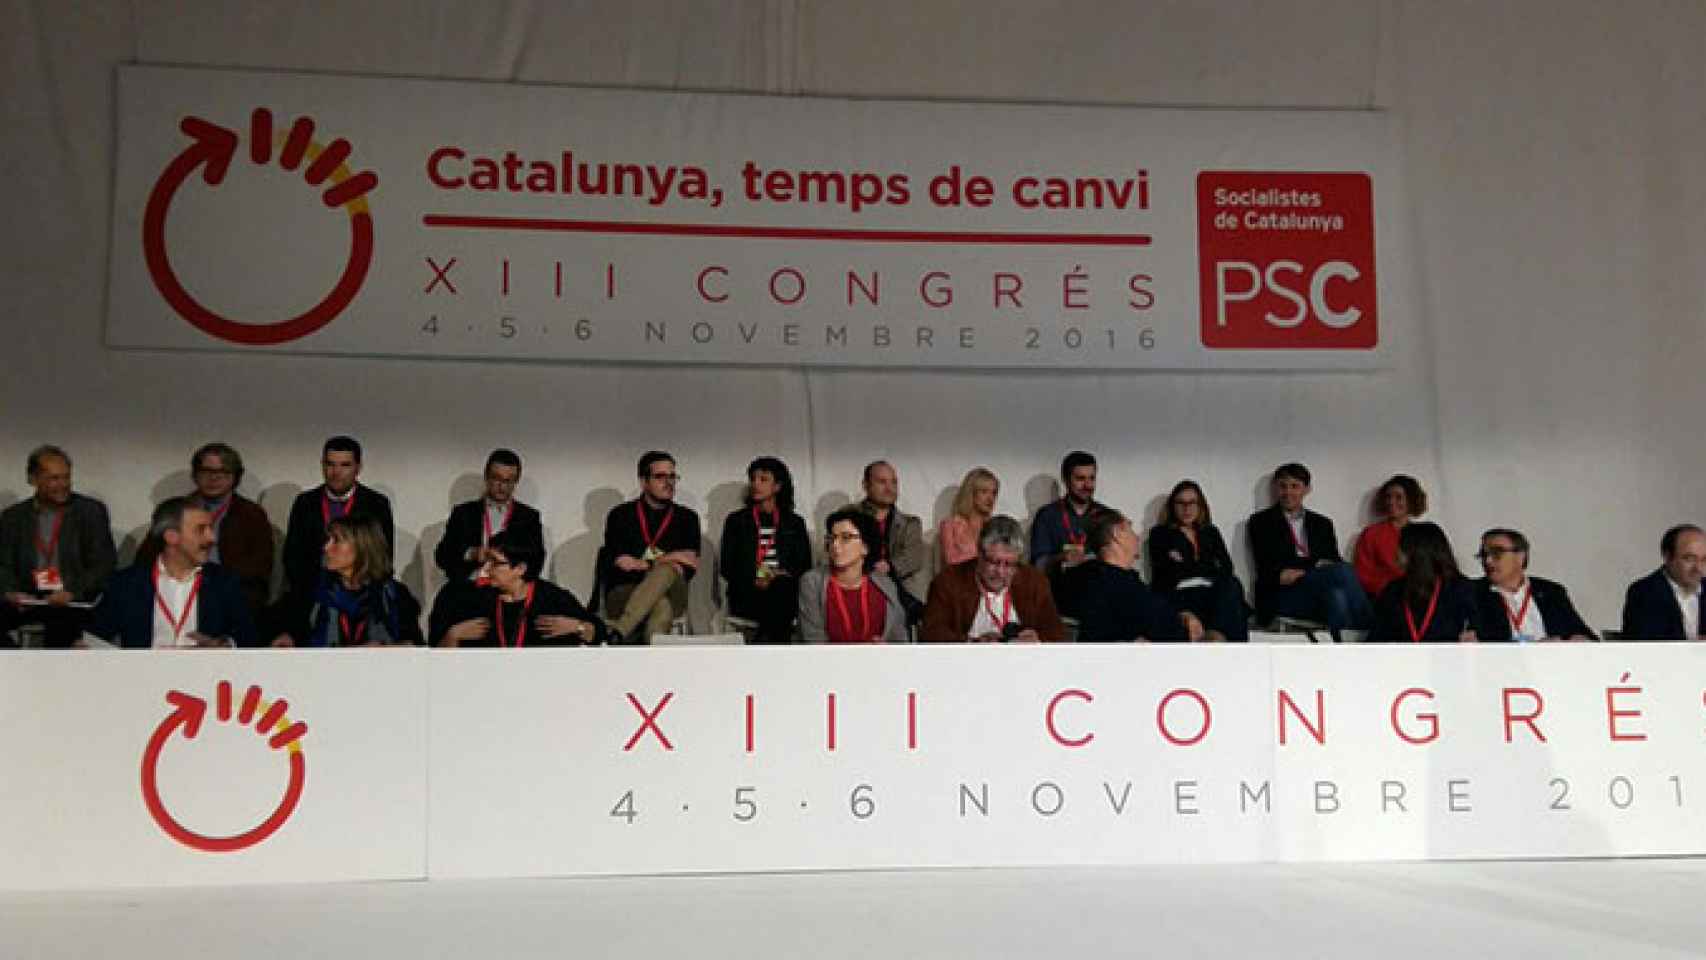 El PSC celebra su XIII Congreso bajo el lema Cataluña, tiempo de cambio / CG